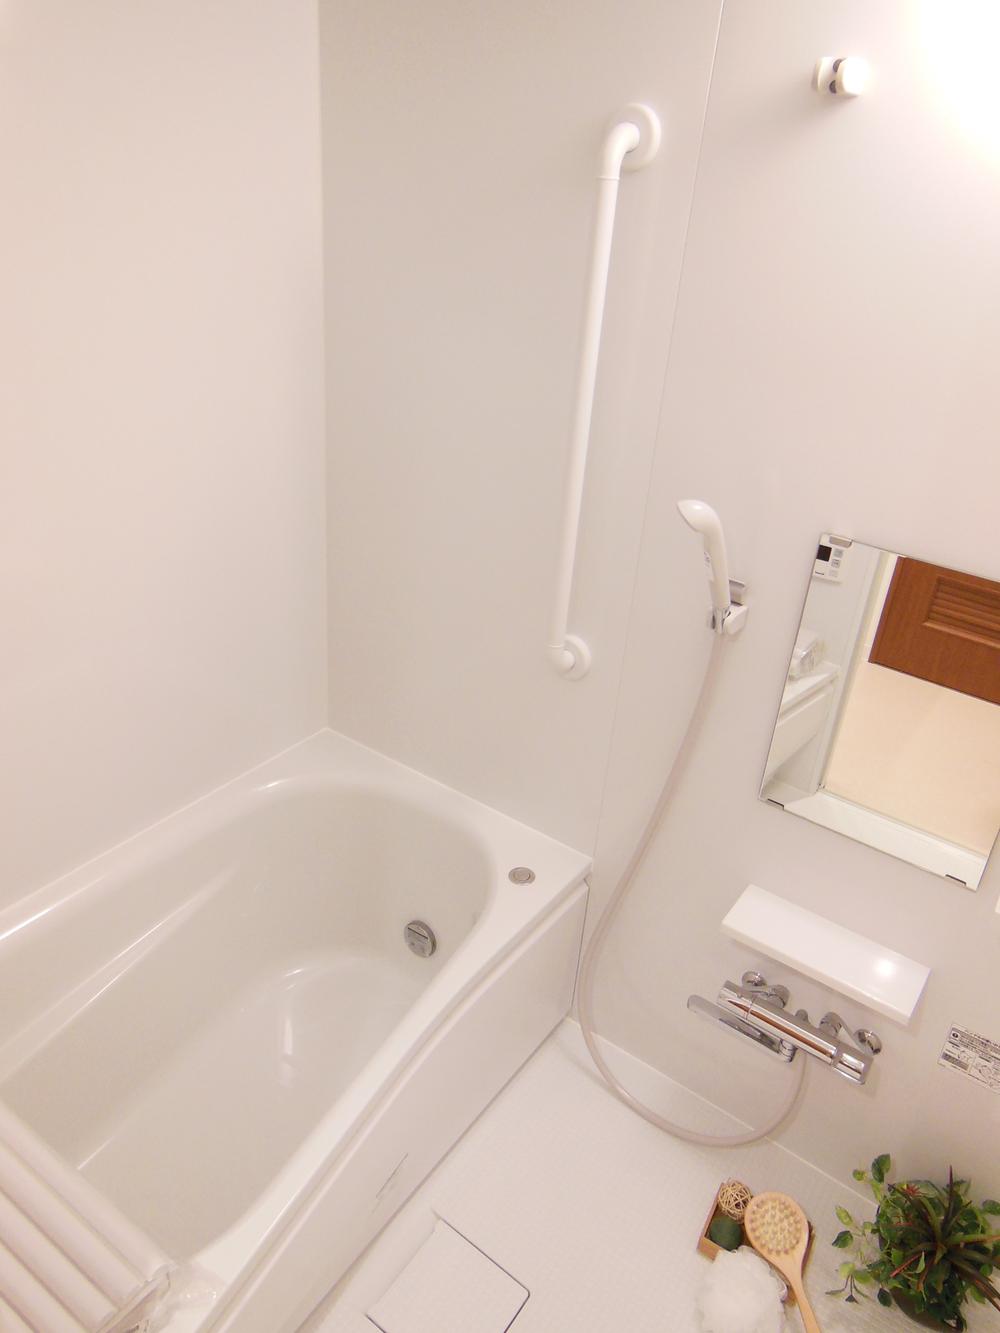 Bathroom. Otobasu already replaced (November 2013) Shooting